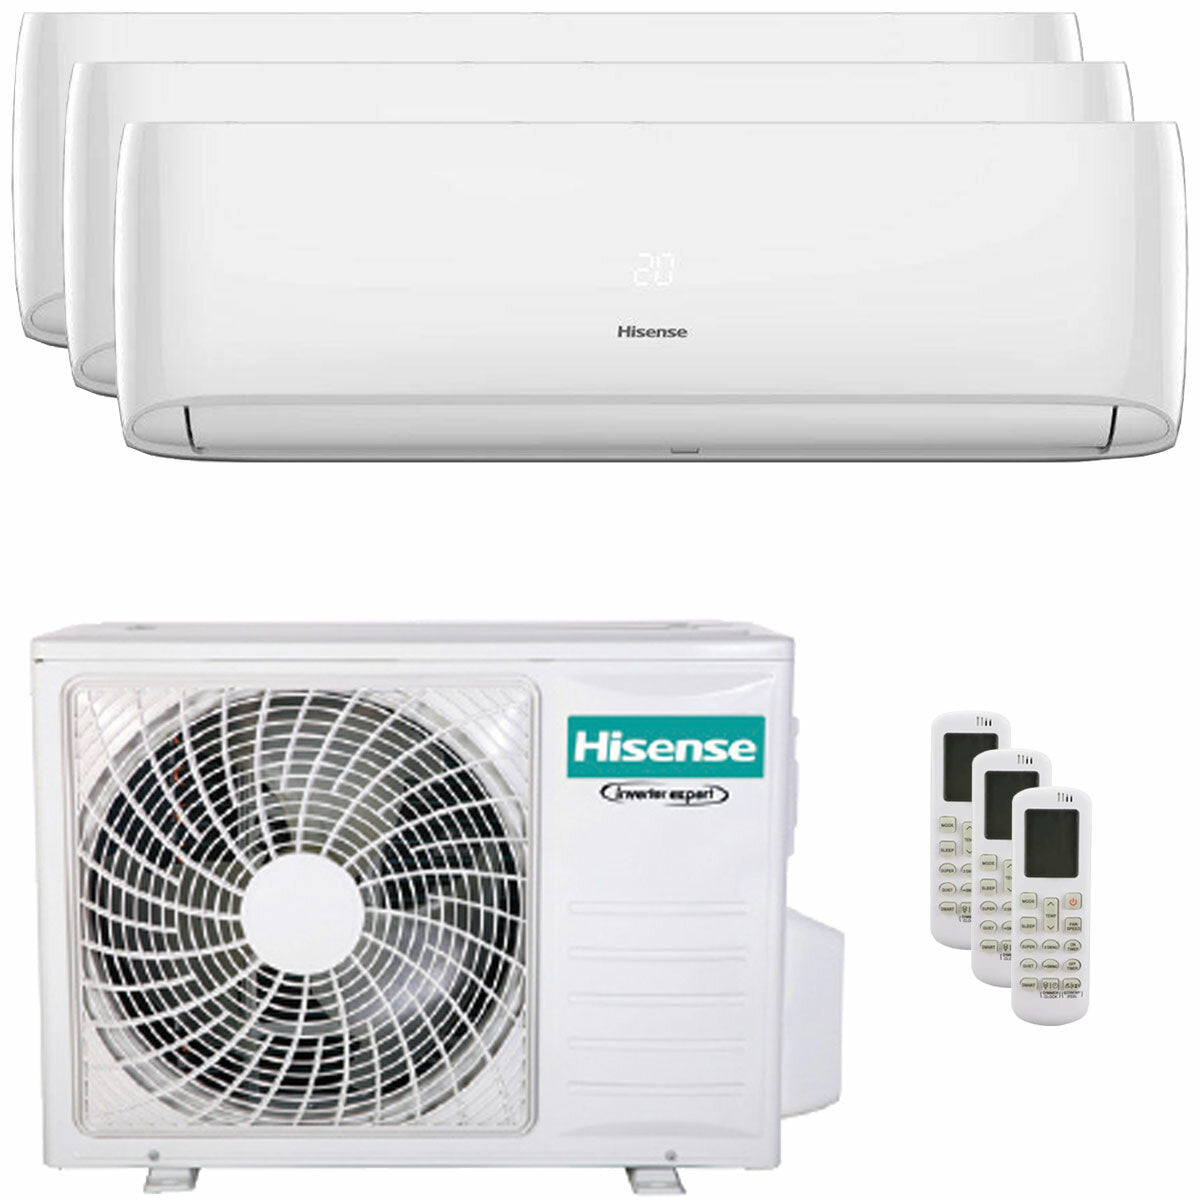 Hisense Hi-Comfort trial climatiseur split 9000+9000+12000 BTU onduleur A++ wifi unité extérieure 6,3 kW